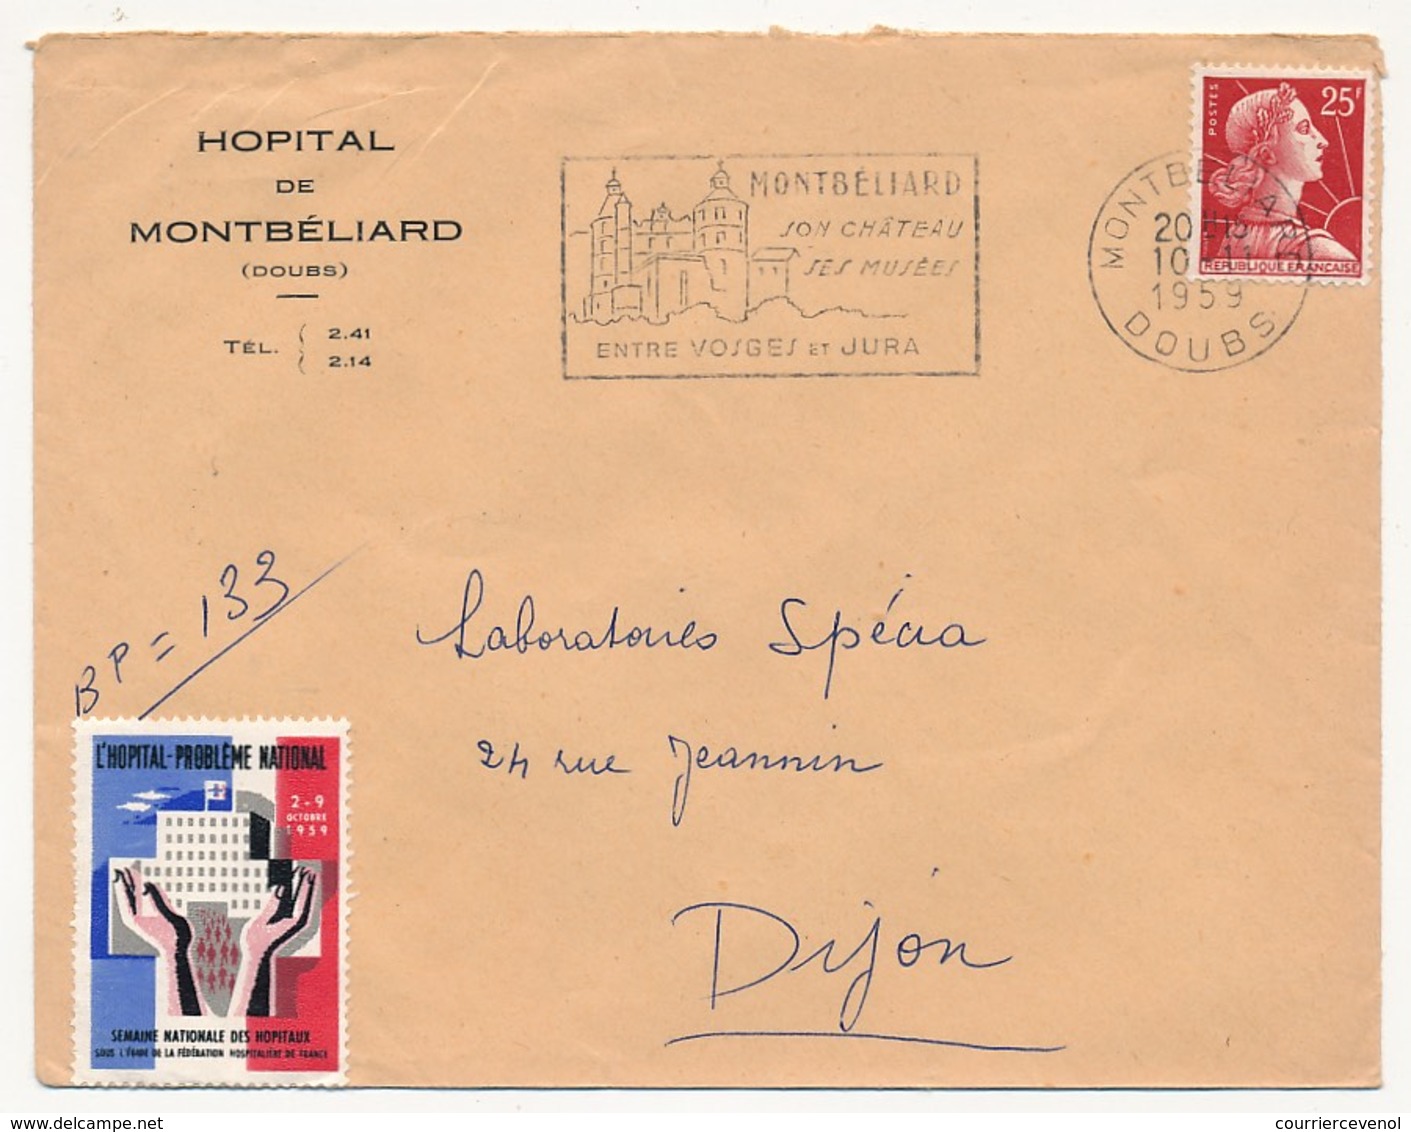 FRANCE - Enveloppe Affr 25F Muller Avec Vignette "L'Hopital Problème National" - Hopital De Montbéliard (Doubs) 1959 - Cartas & Documentos